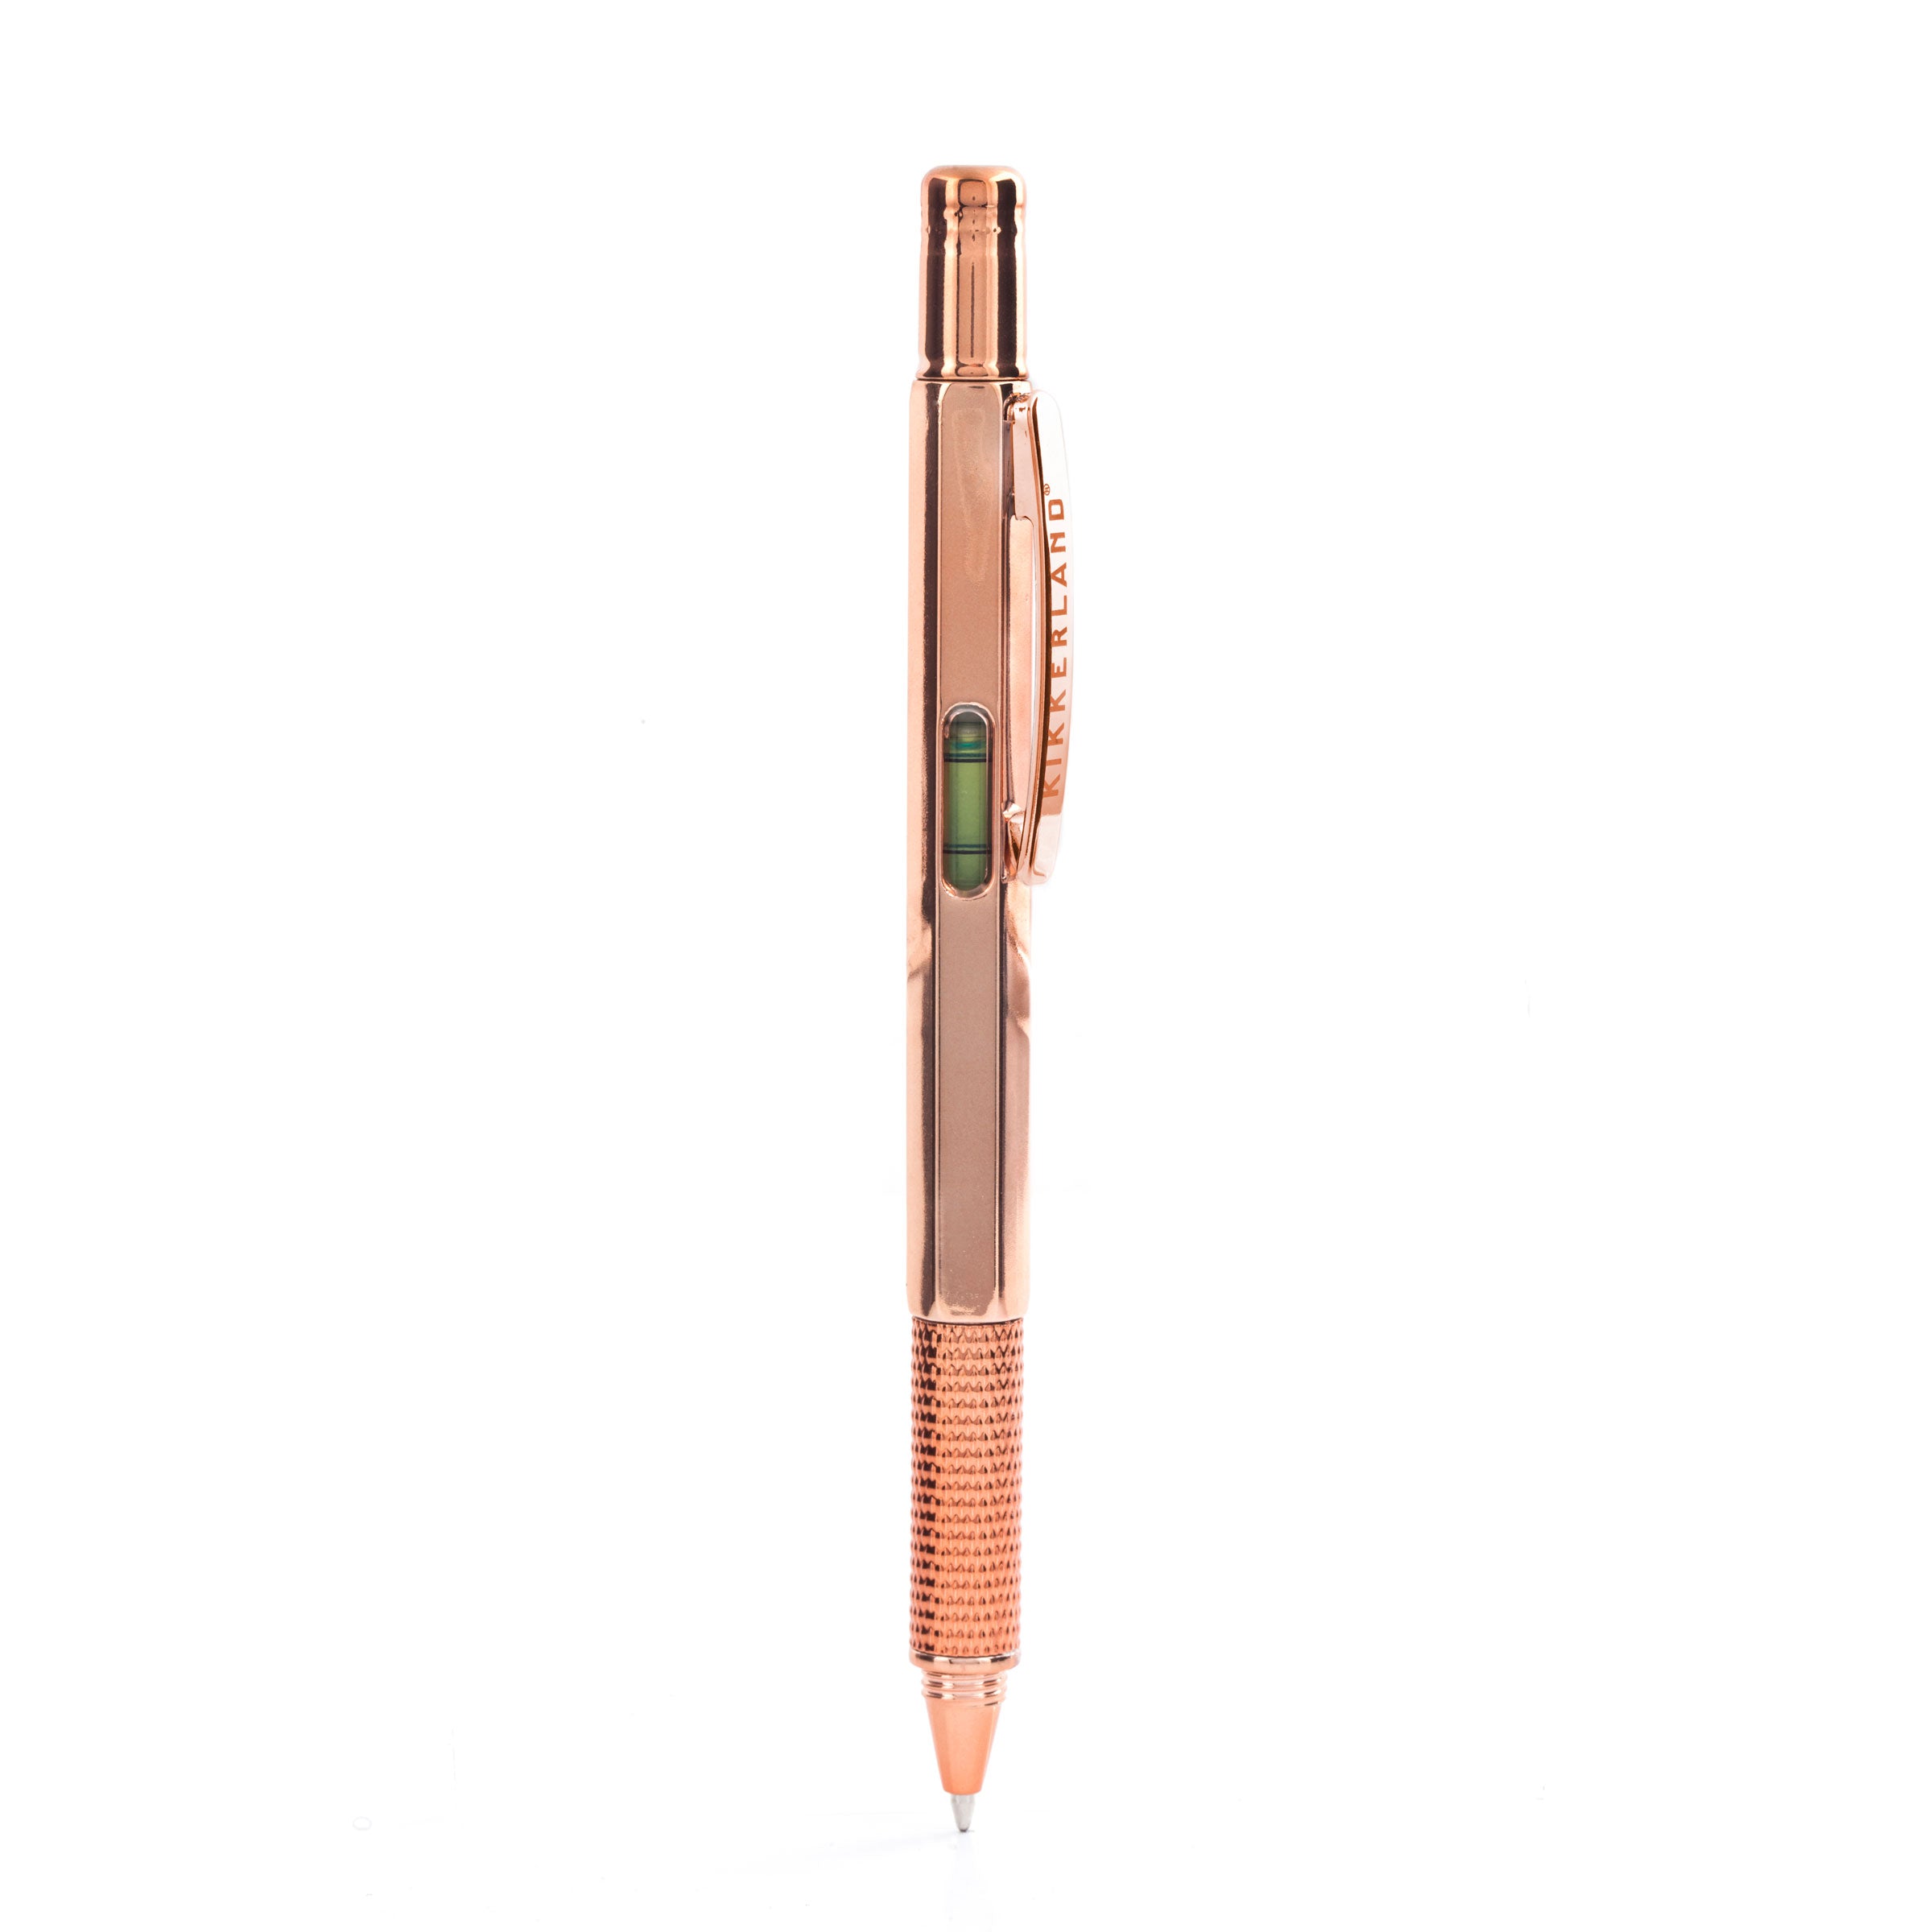 Gel Ink Pens – Kikkerland Design Inc